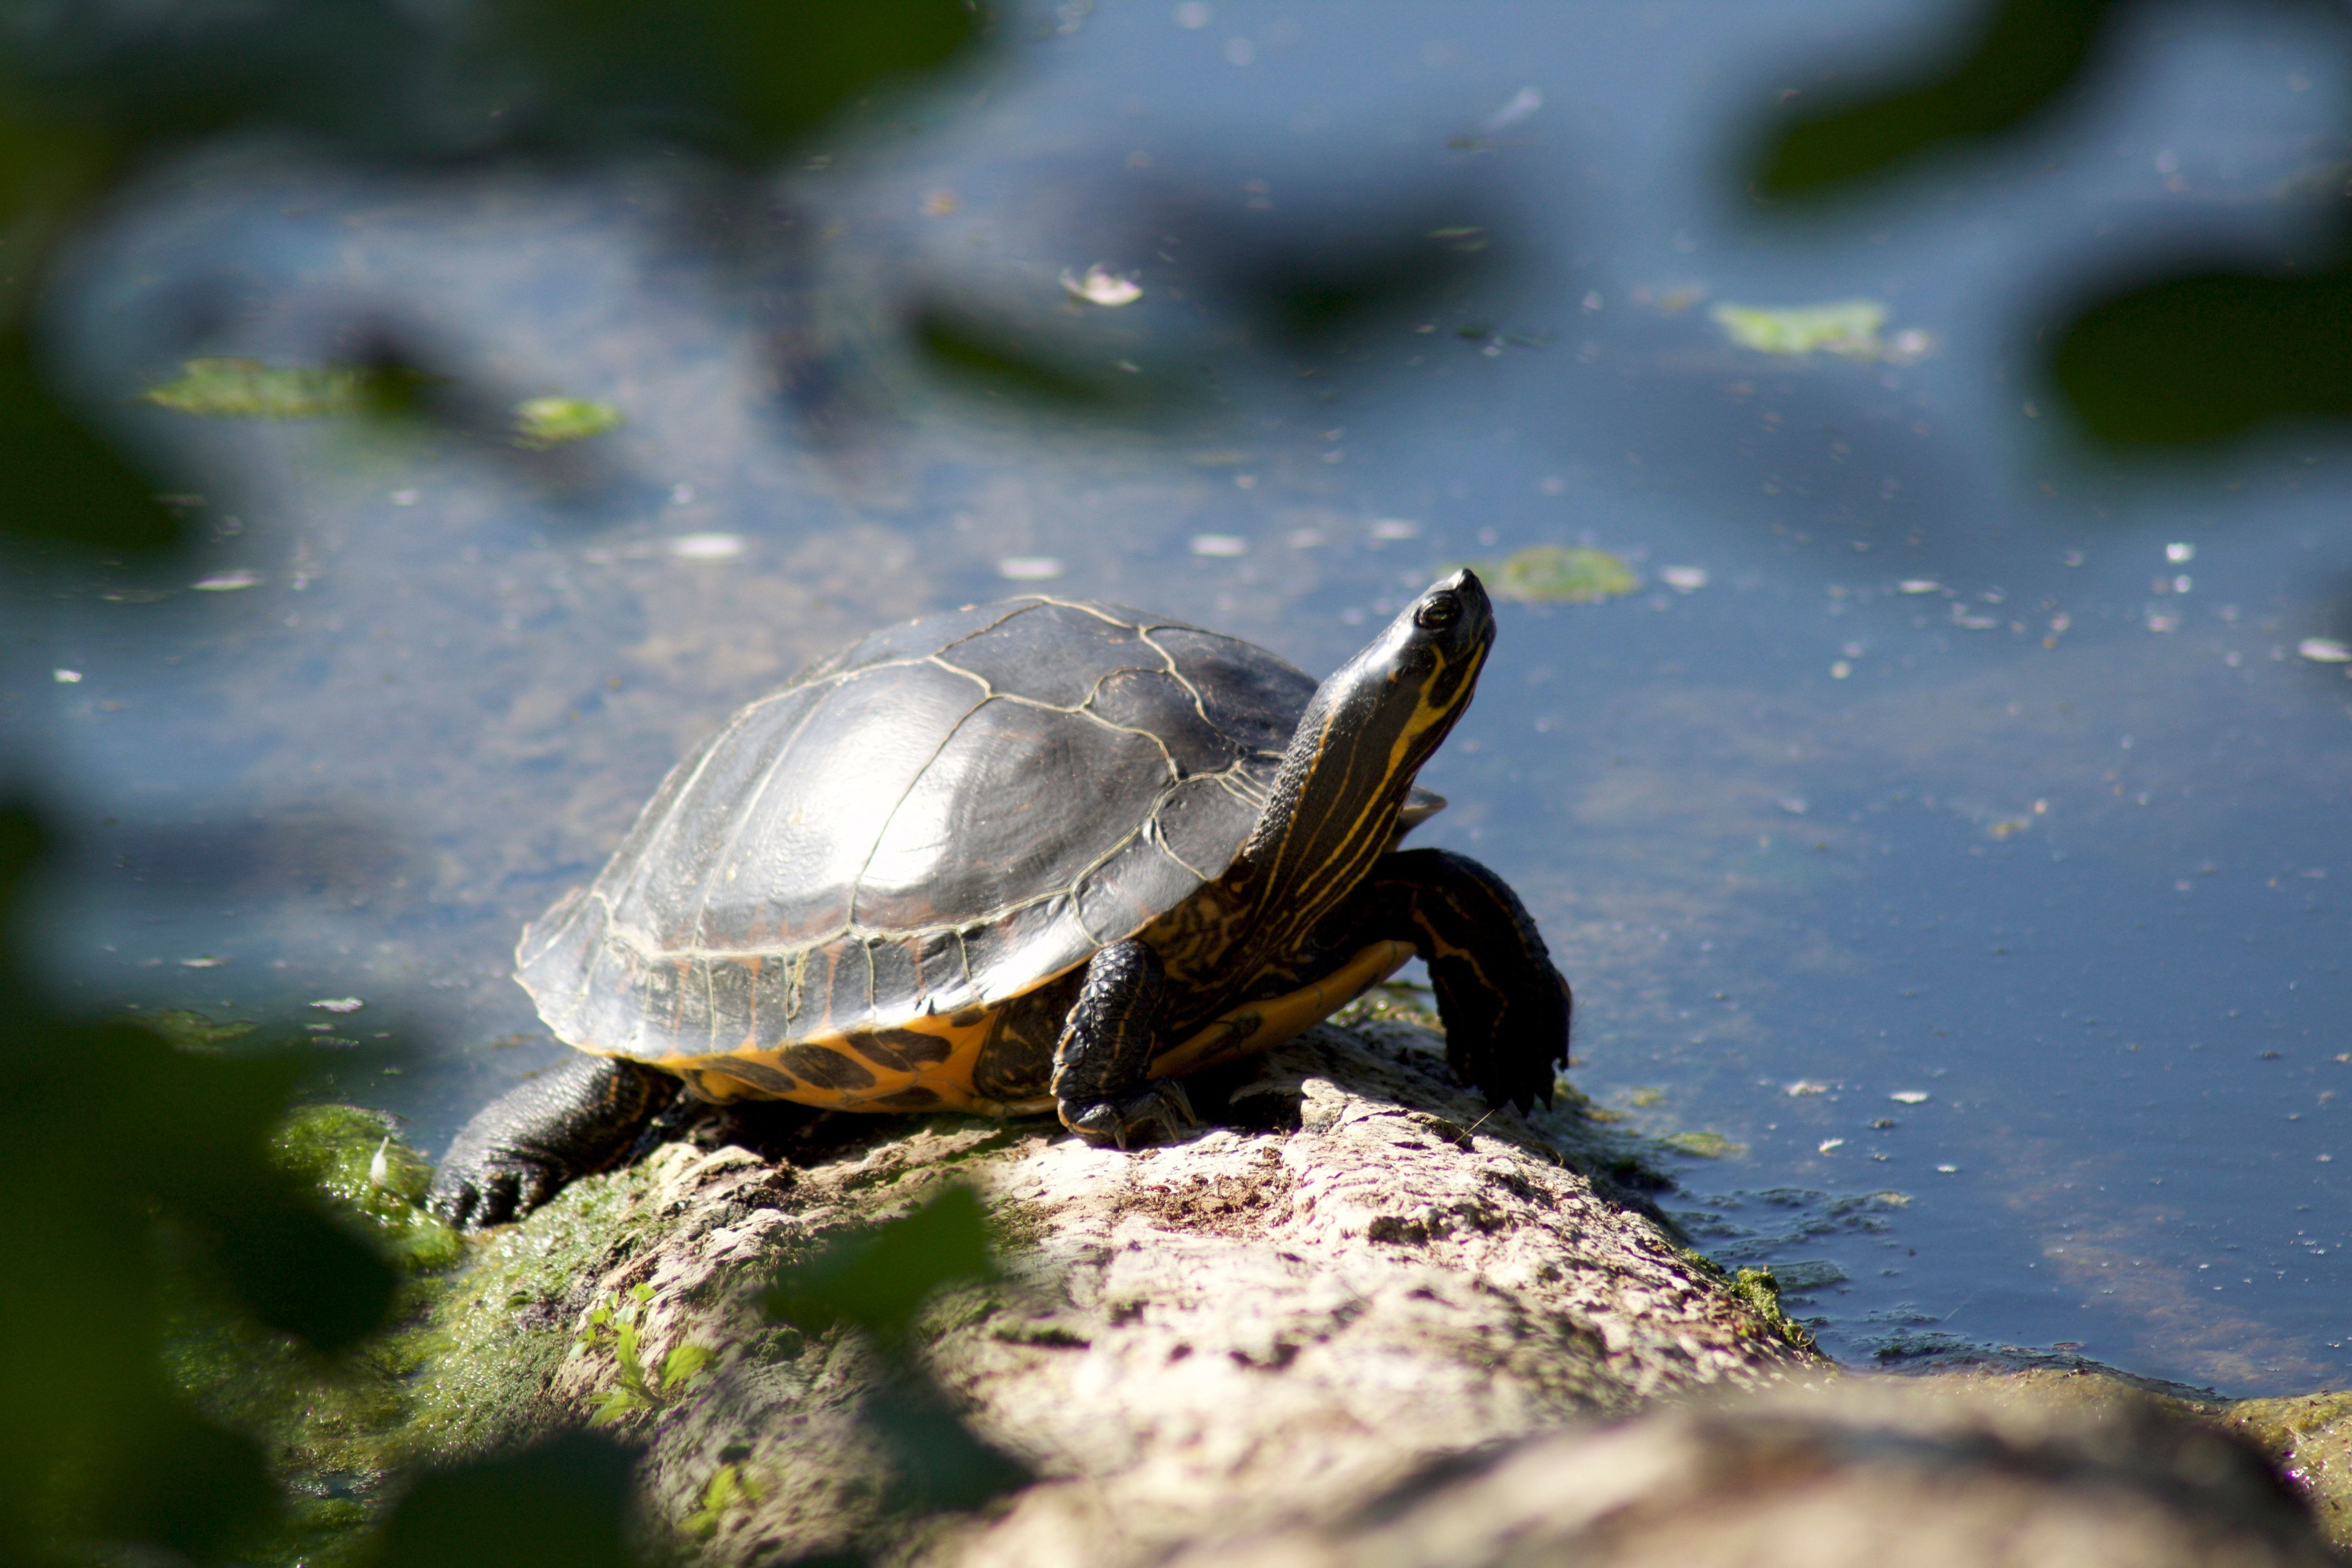 Aux étangs de Commelles, une petite population de tortues de Floride a pris ses quartiers. Aurélien Alcade